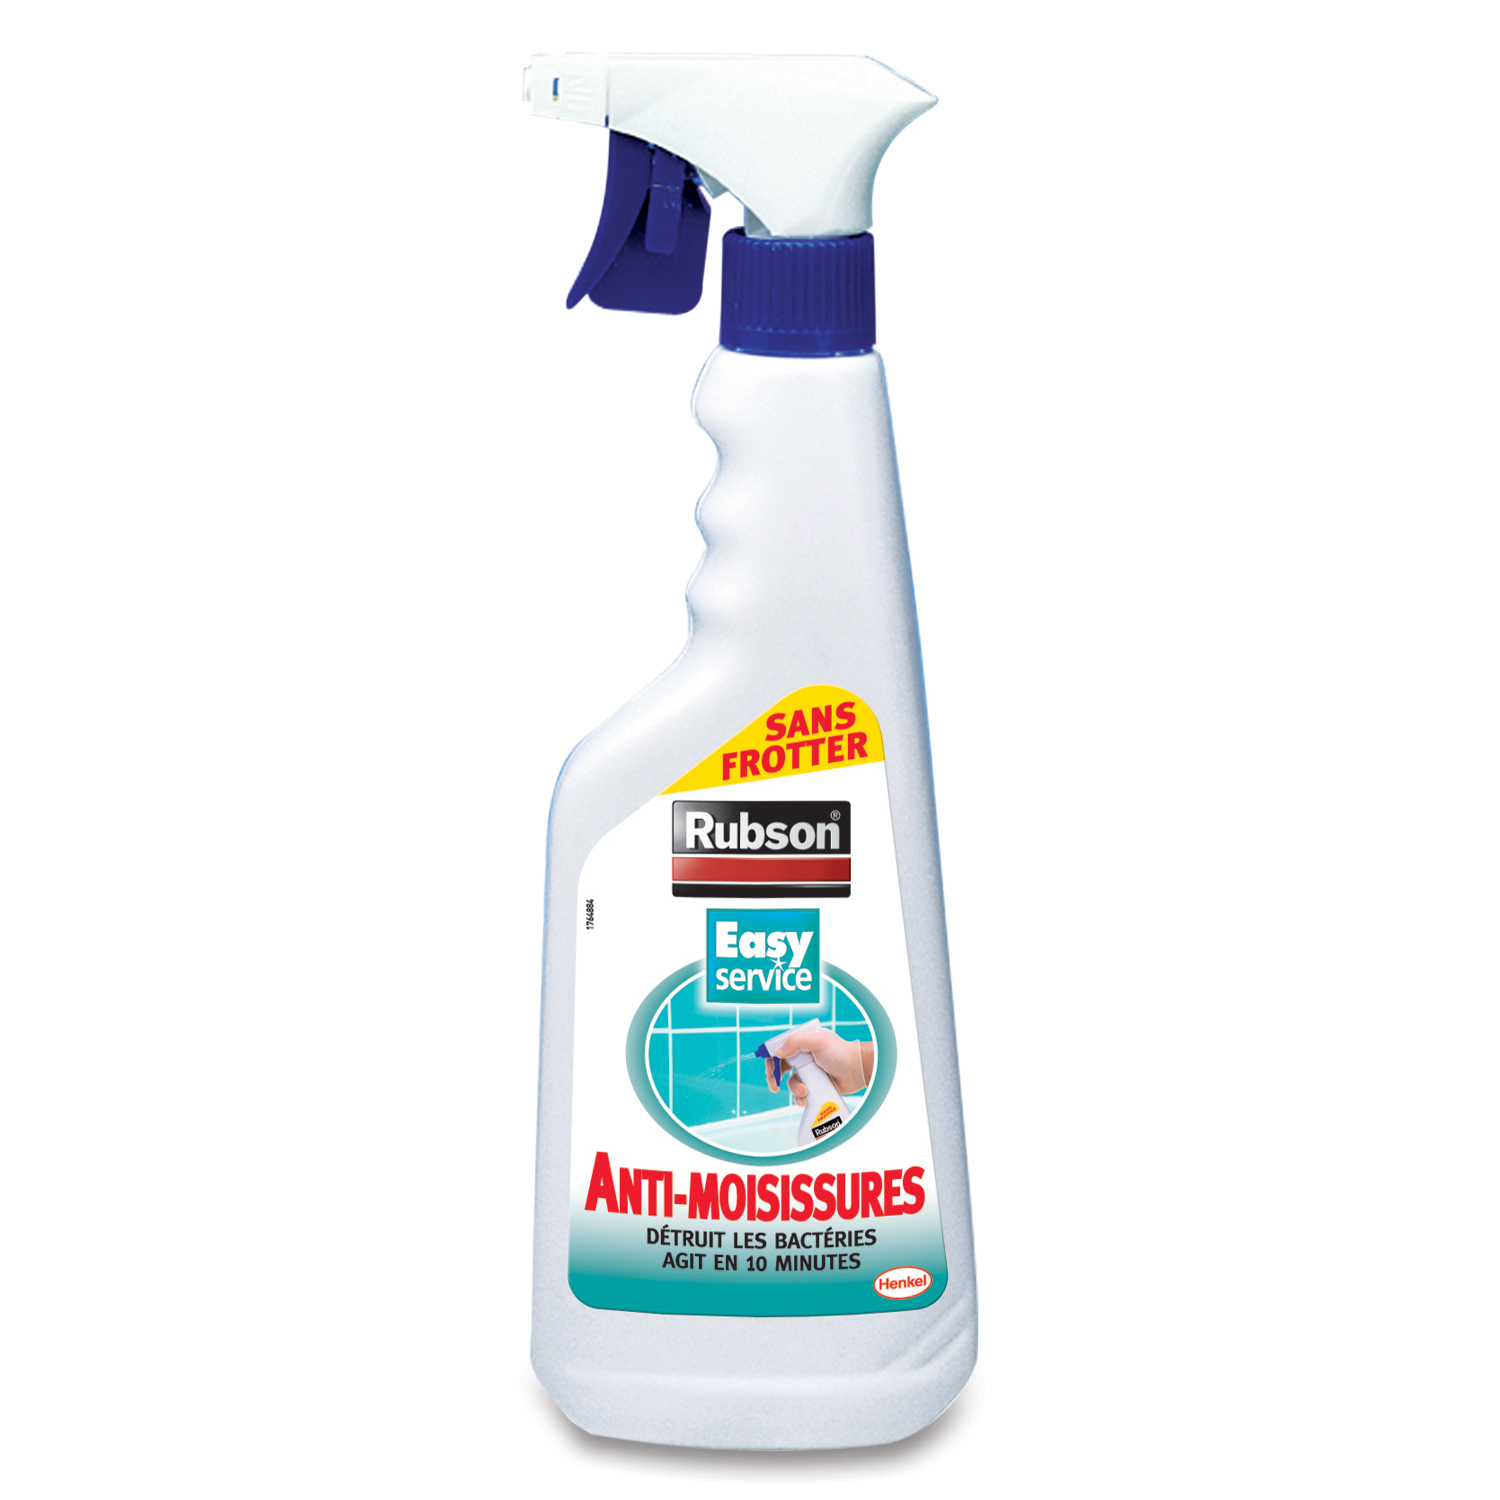 Spray anti-moisissure écologique pour intérieur de voiture, évite